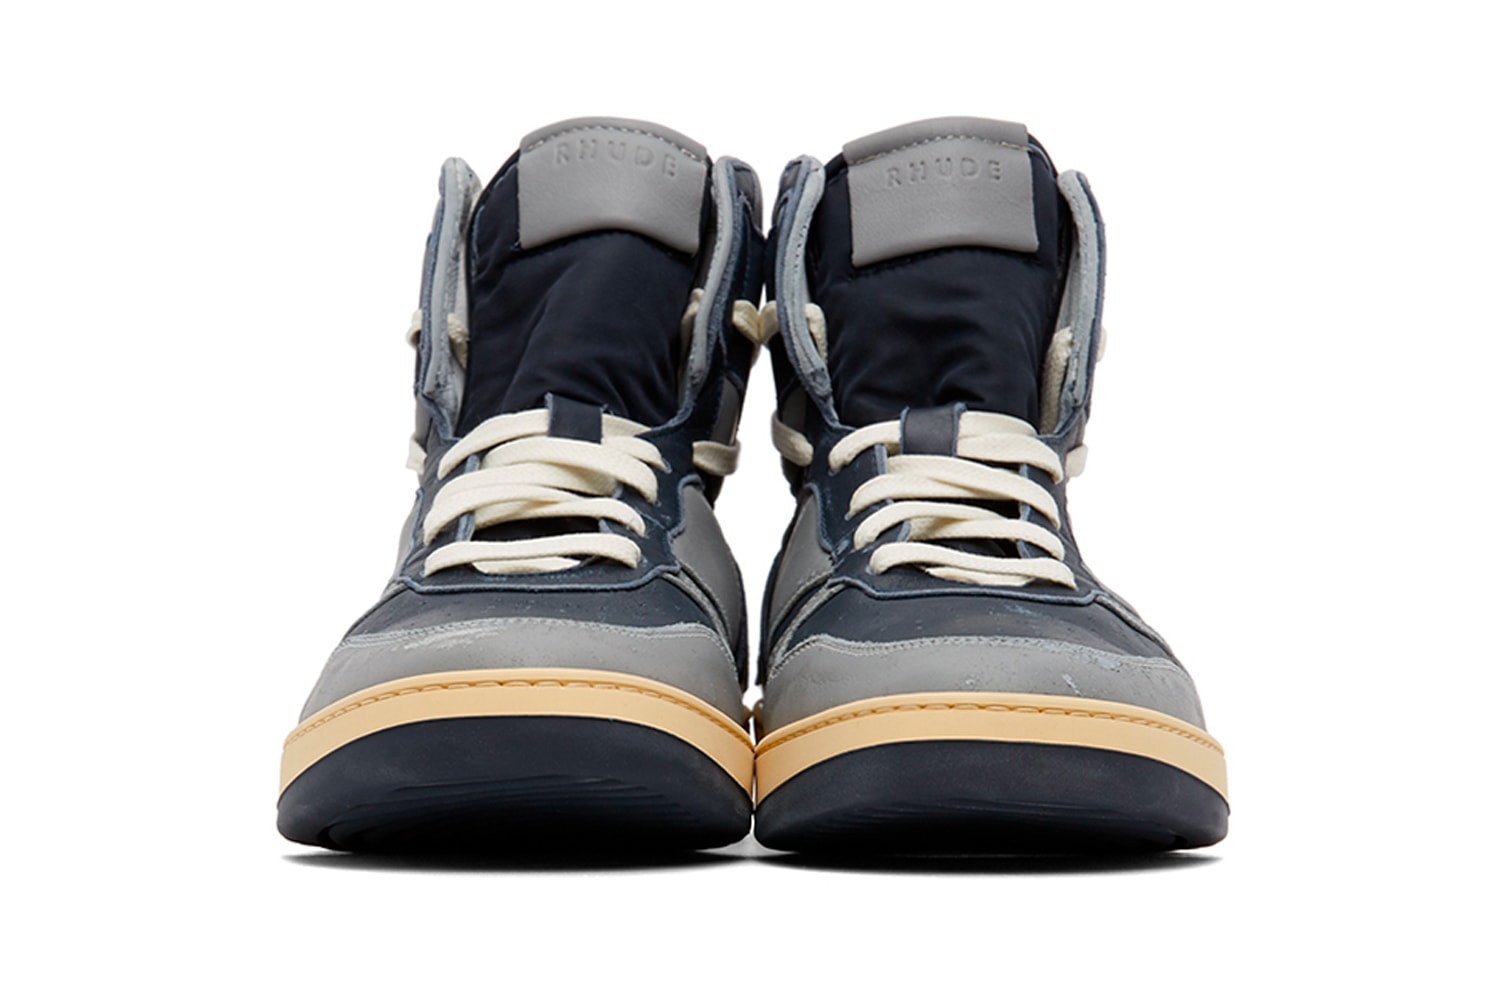 RHUDE Rhecess Hi Sneakers Georgetown Release Grey Navy Rhuigi SSENSE Info